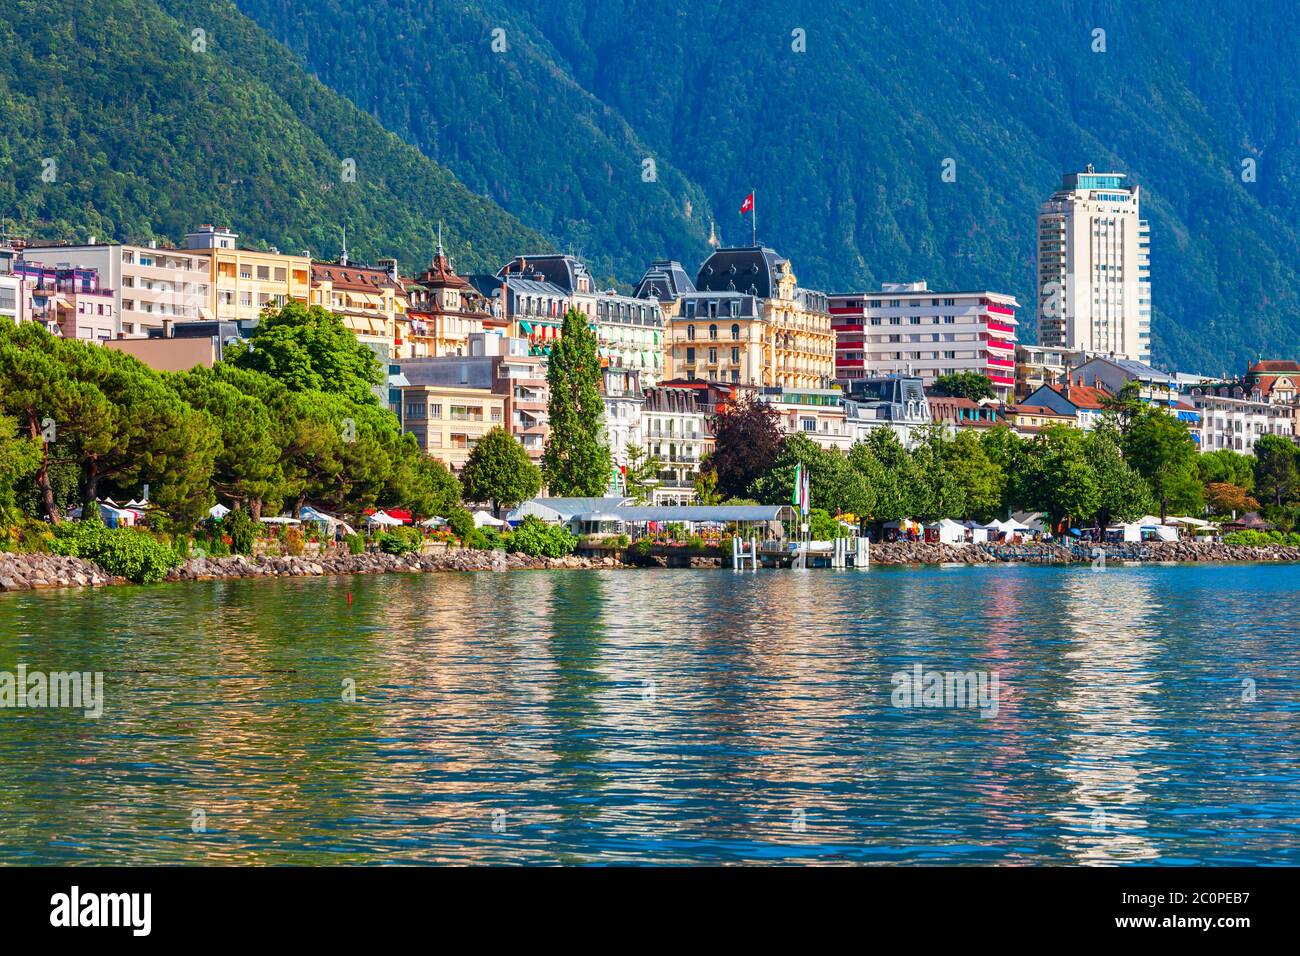 Porto di Montreux con yacht e barche. Montreux è una cittadina sul Lago di Ginevra ai piedi delle Alpi in Svizzera Foto Stock